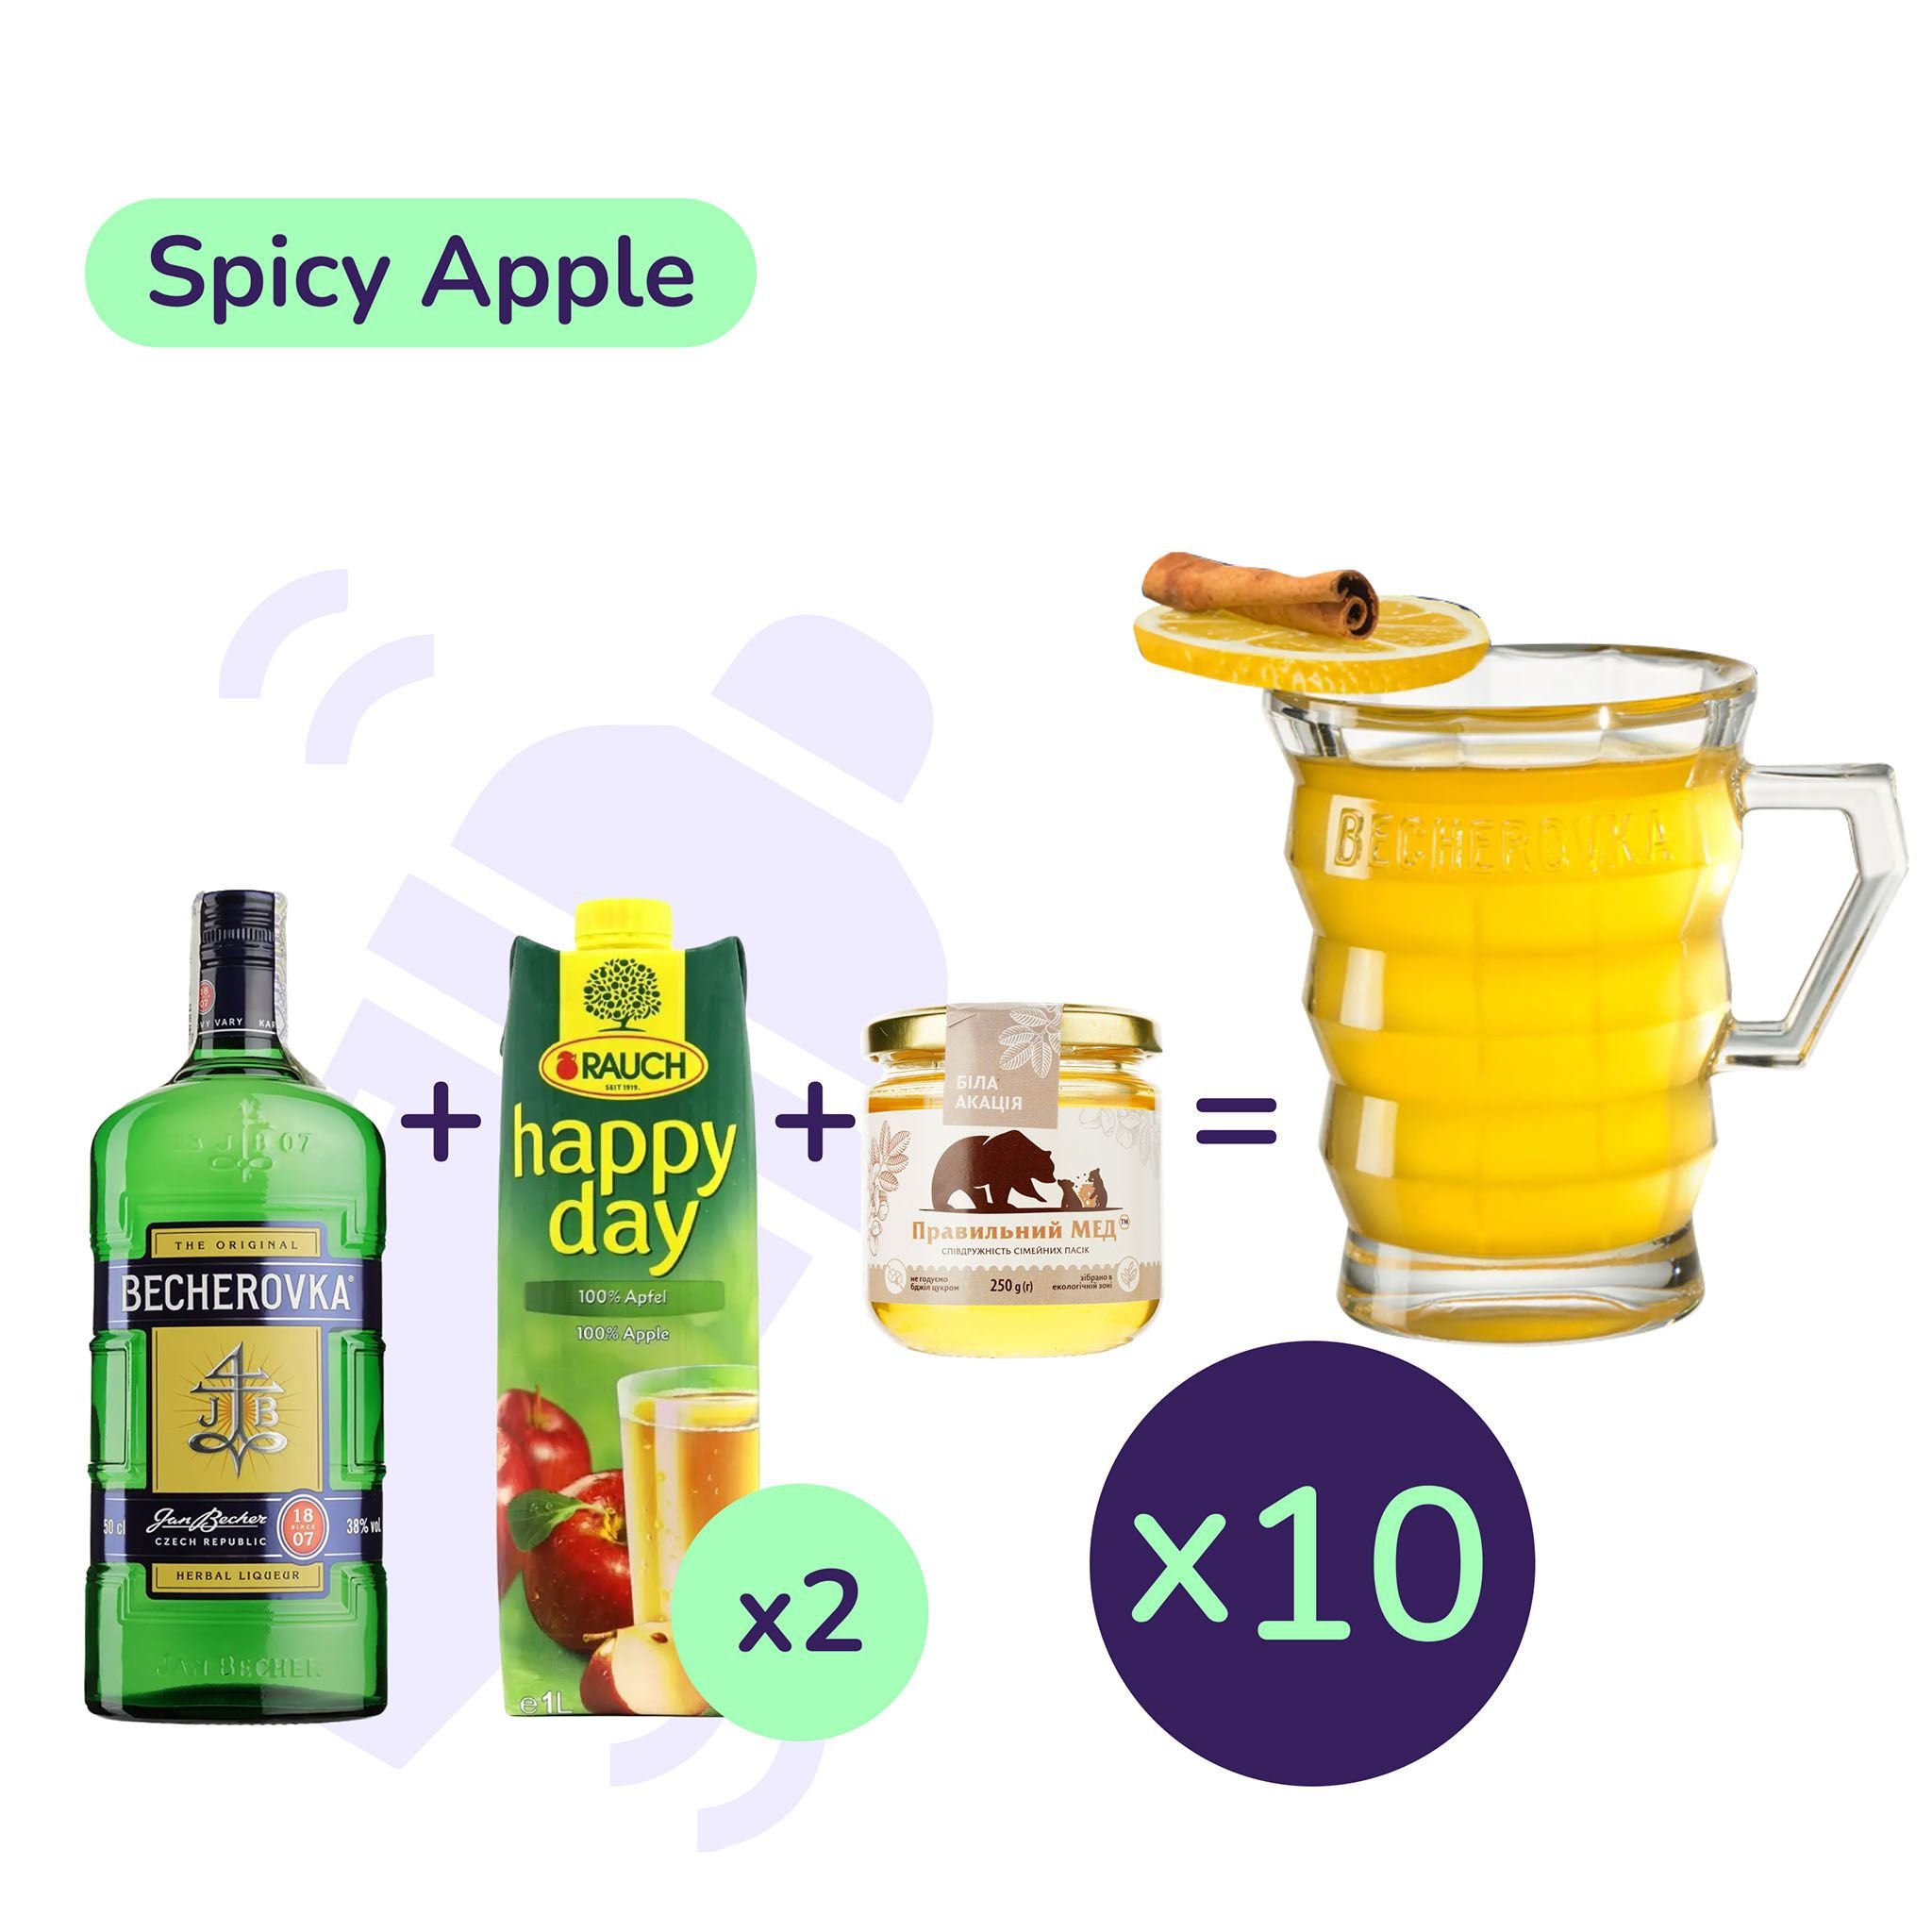 Коктейль Spicy Apple (набор ингредиентов) х10 на основе Becherovka - фото 1